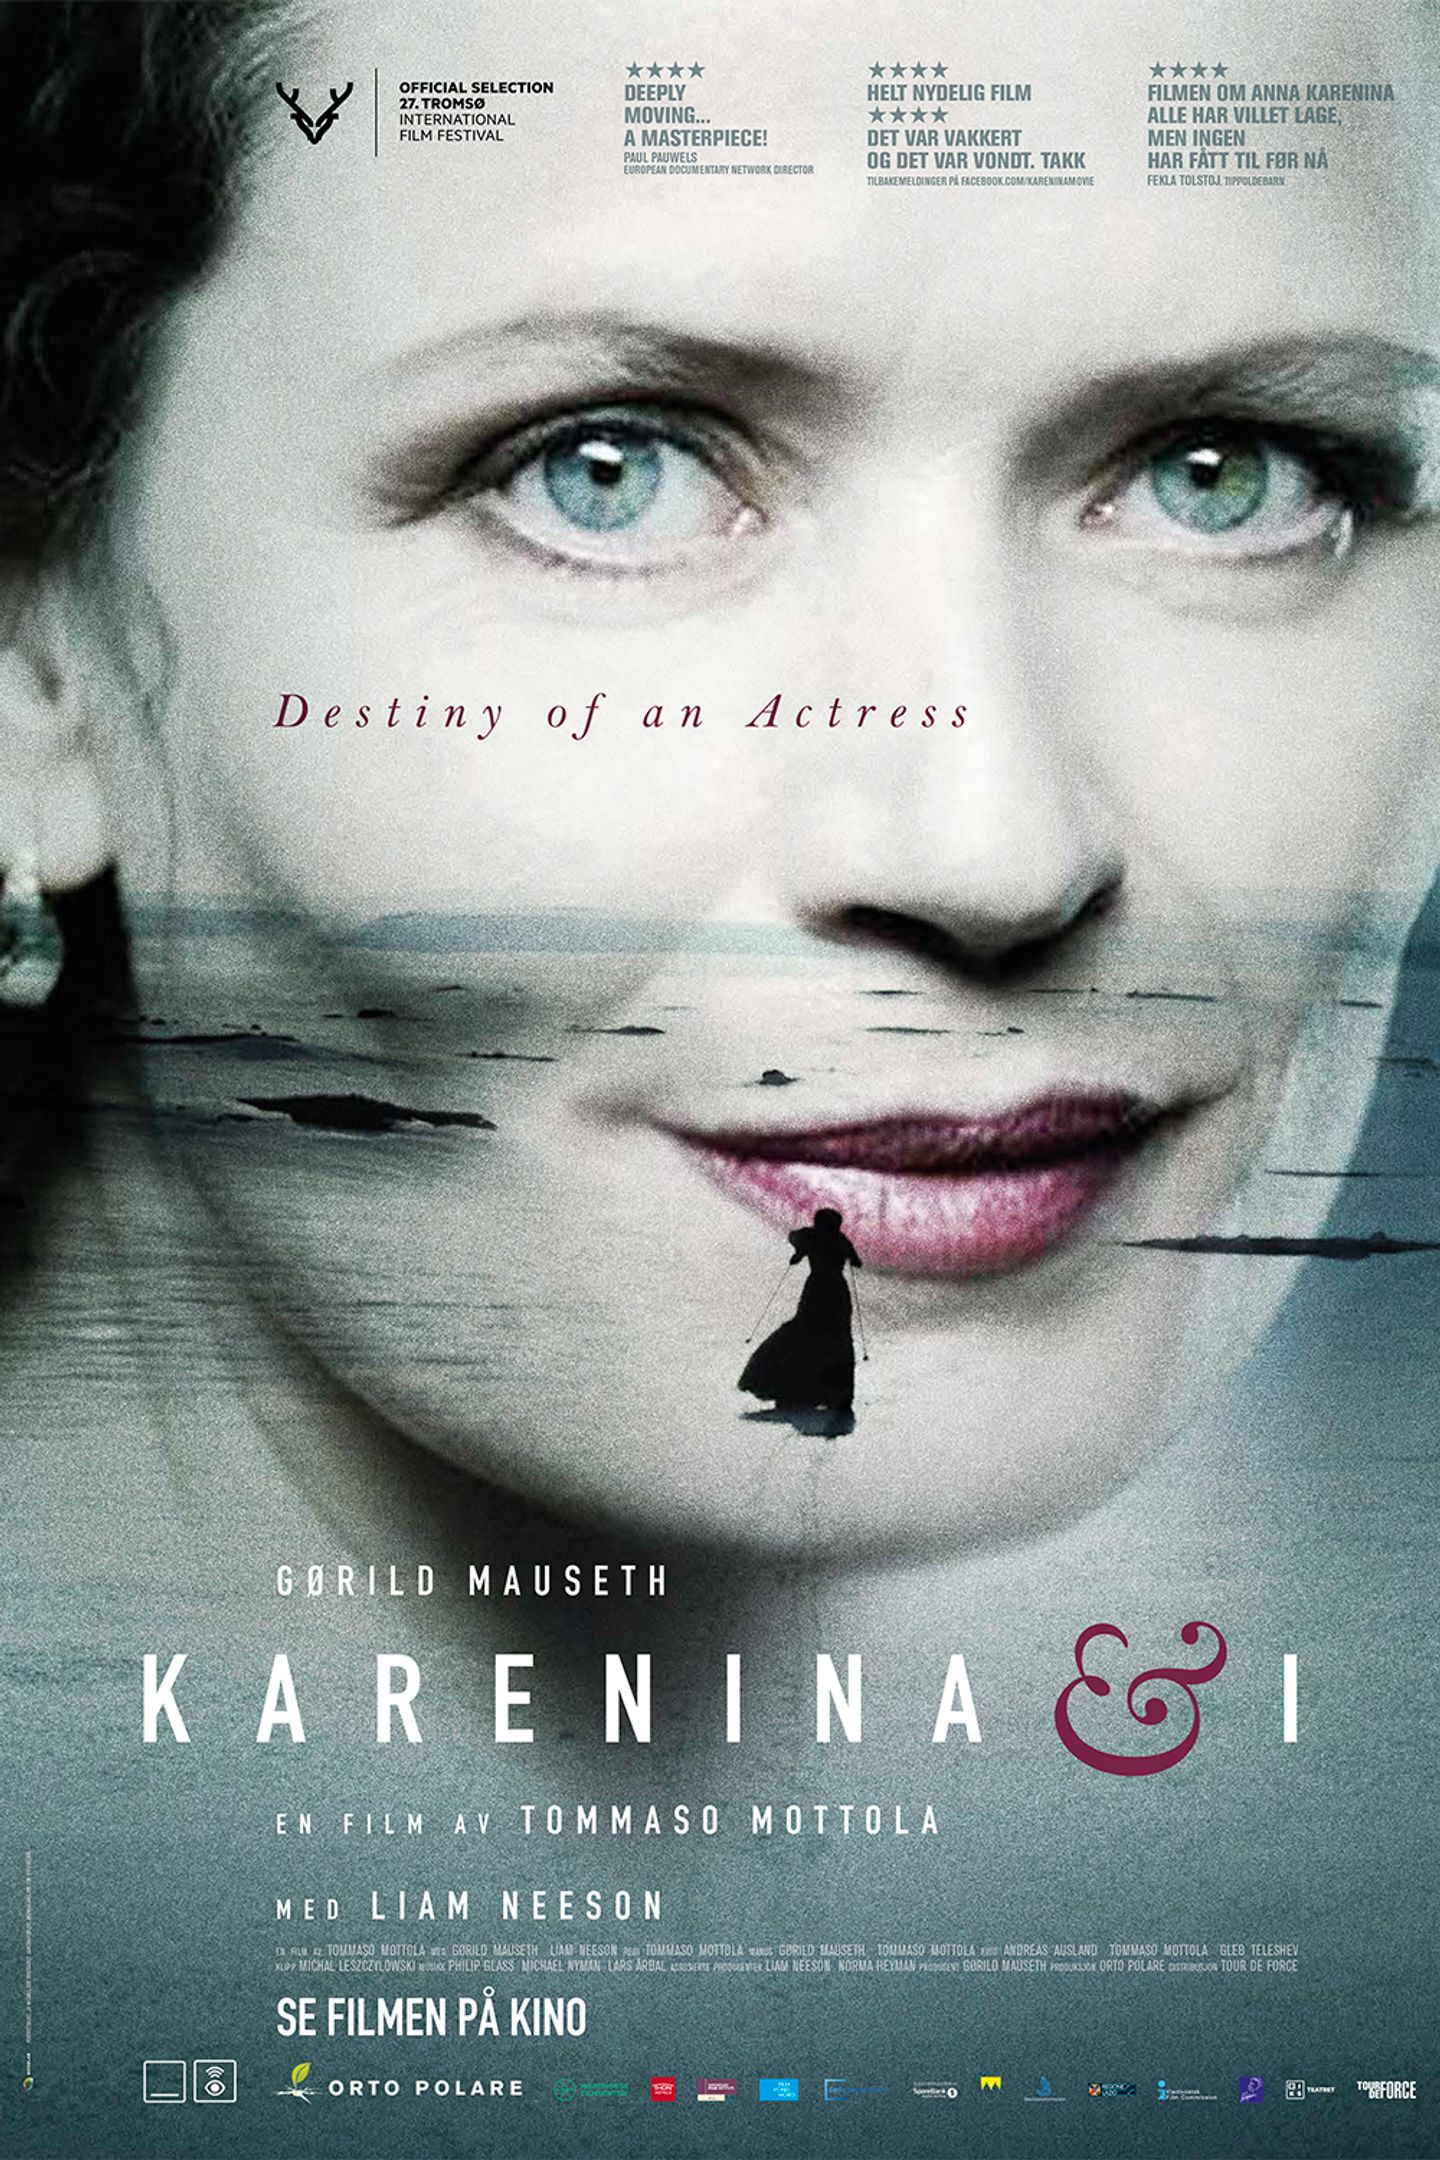 Plakat for 'Karenina & I'